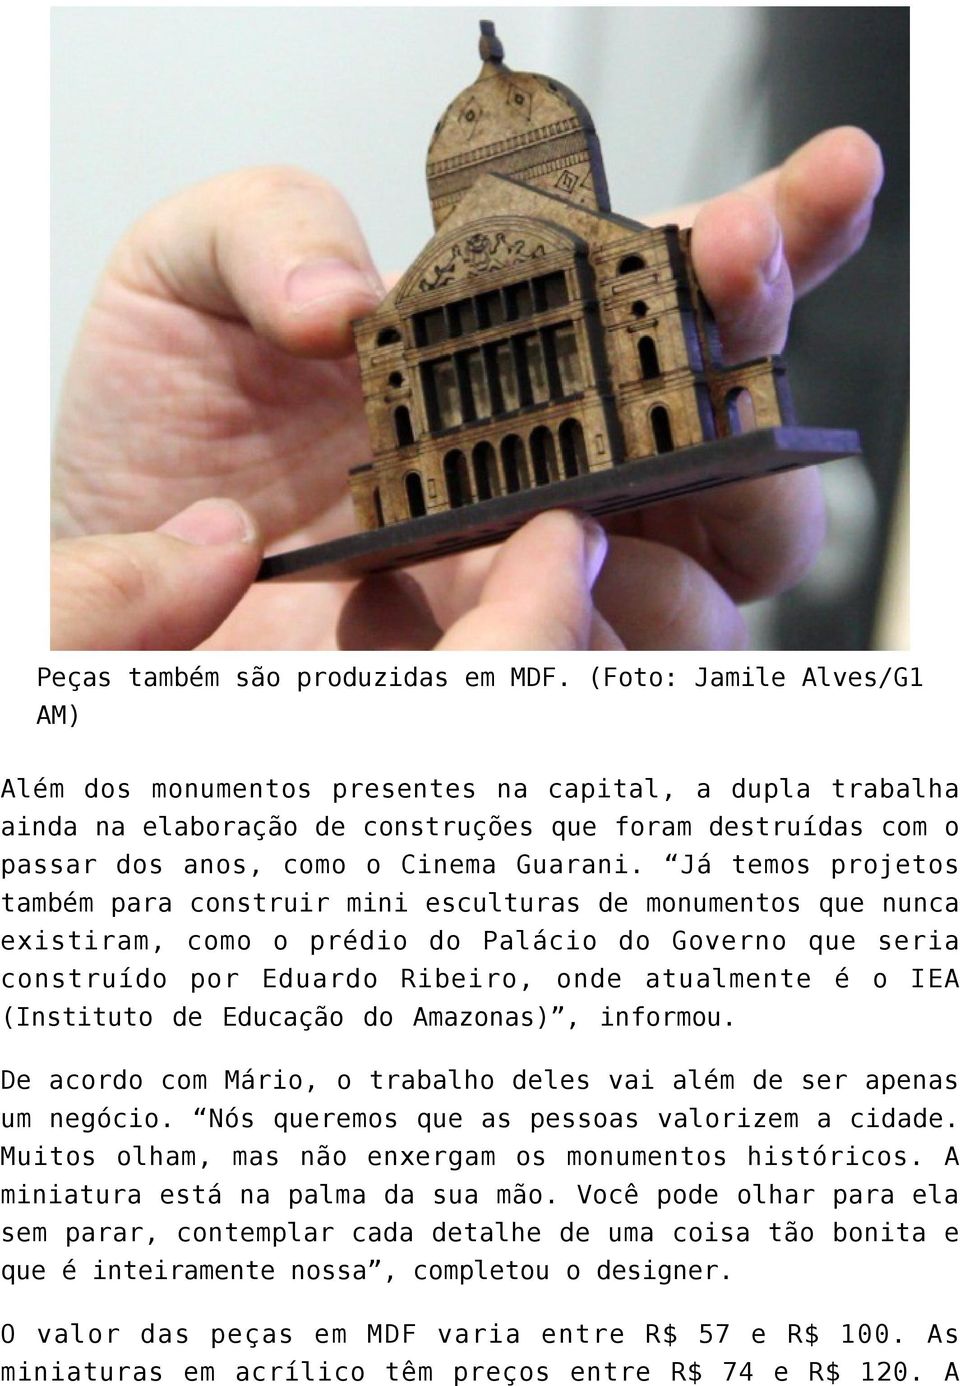 Já temos projetos também para construir mini esculturas de monumentos que nunca existiram, como o prédio do Palácio do Governo que seria construído por Eduardo Ribeiro, onde atualmente é o IEA